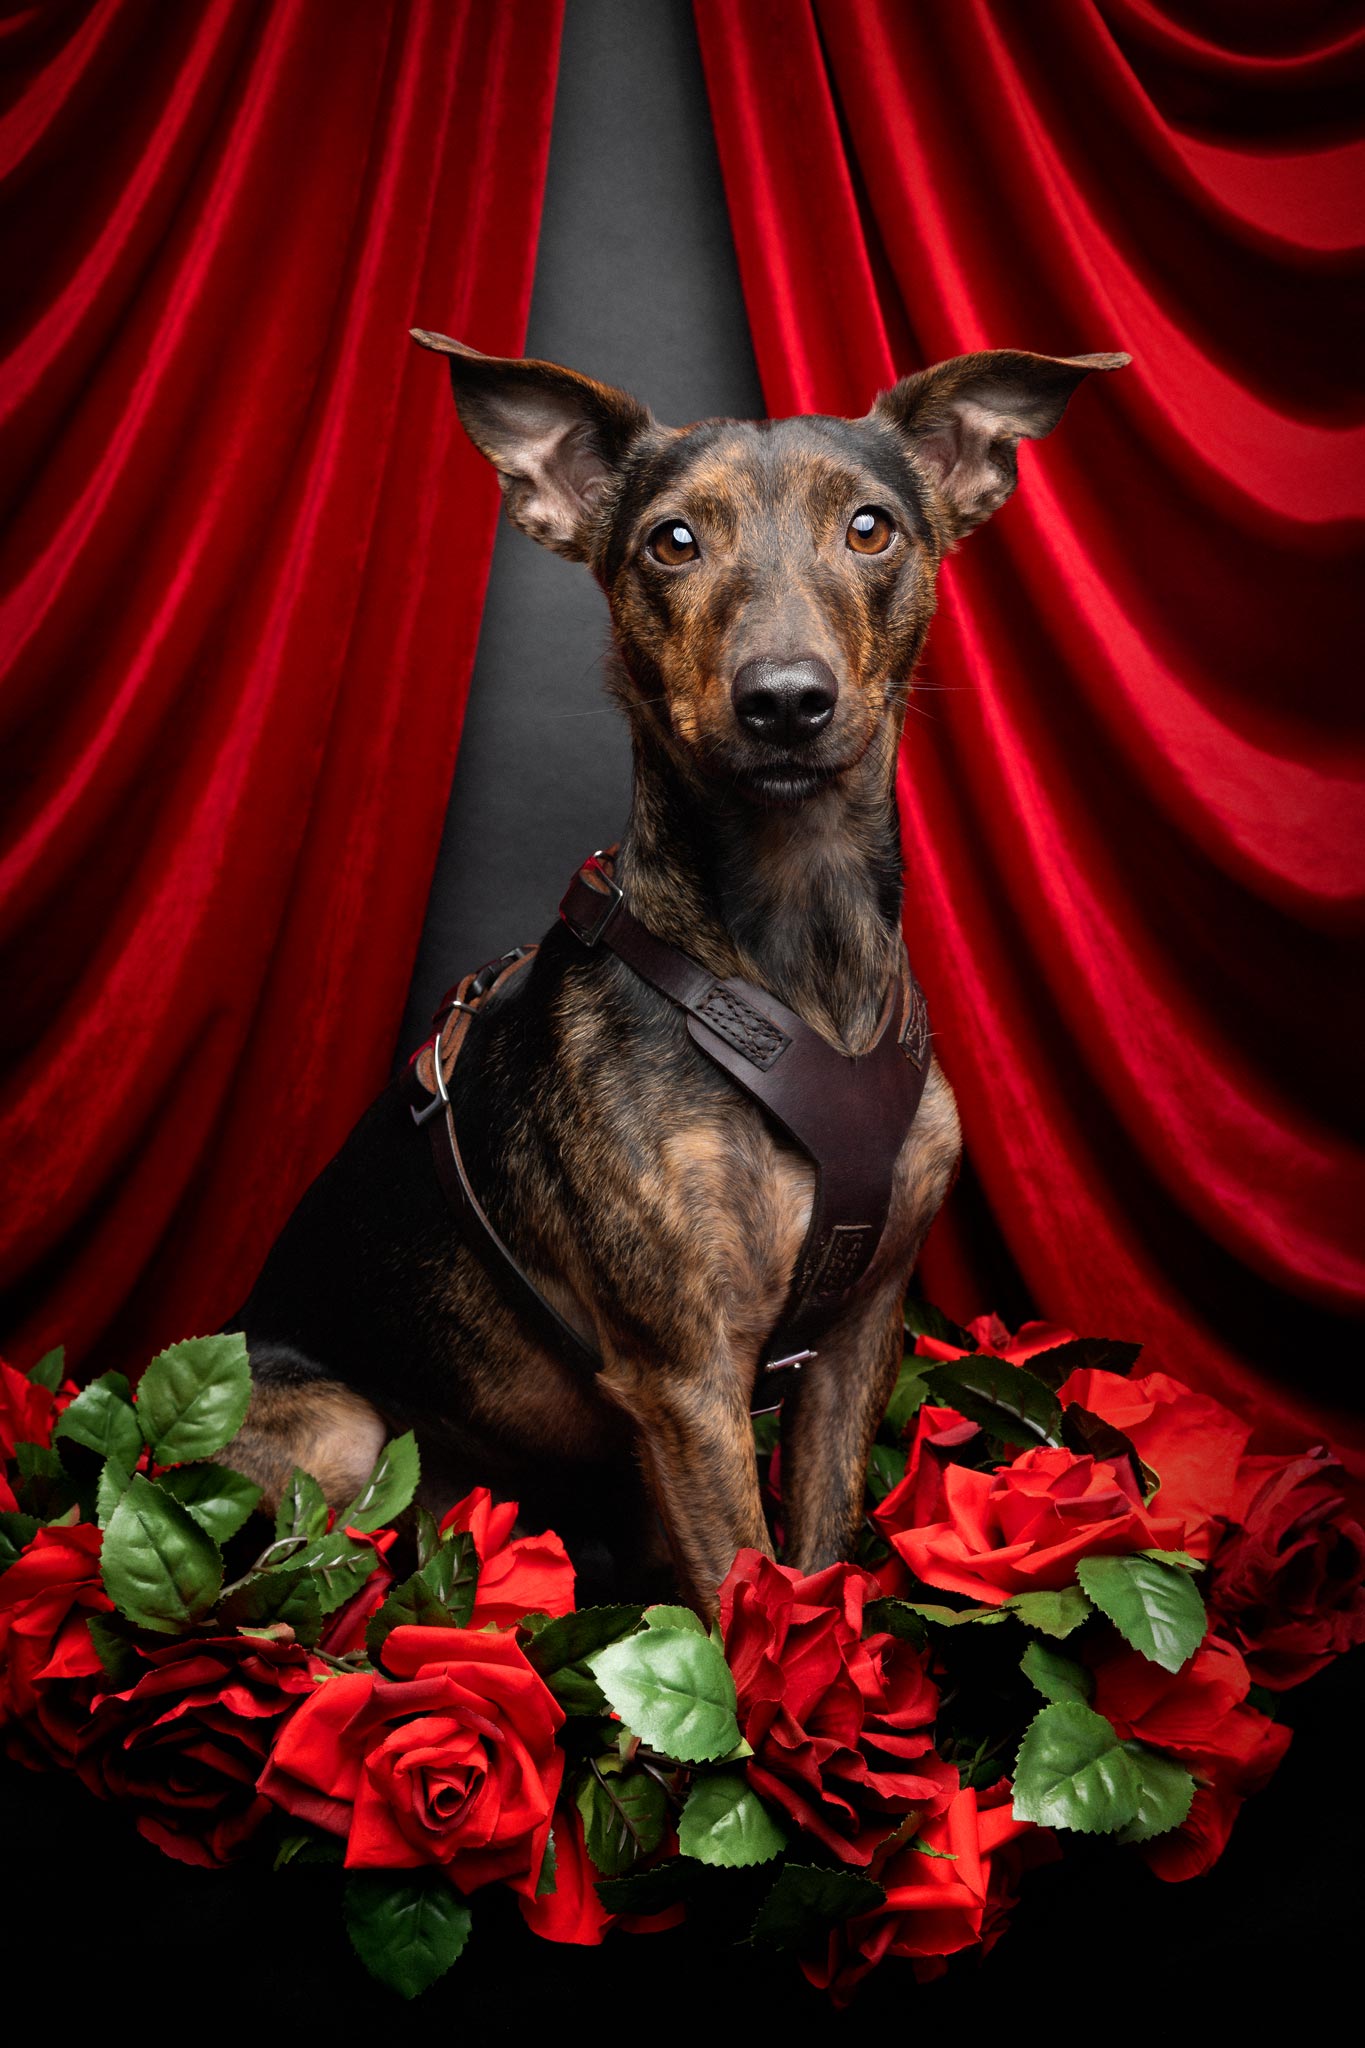 Ein kleiner Hund umrahmt von Rosen vor einem roten Vorhang